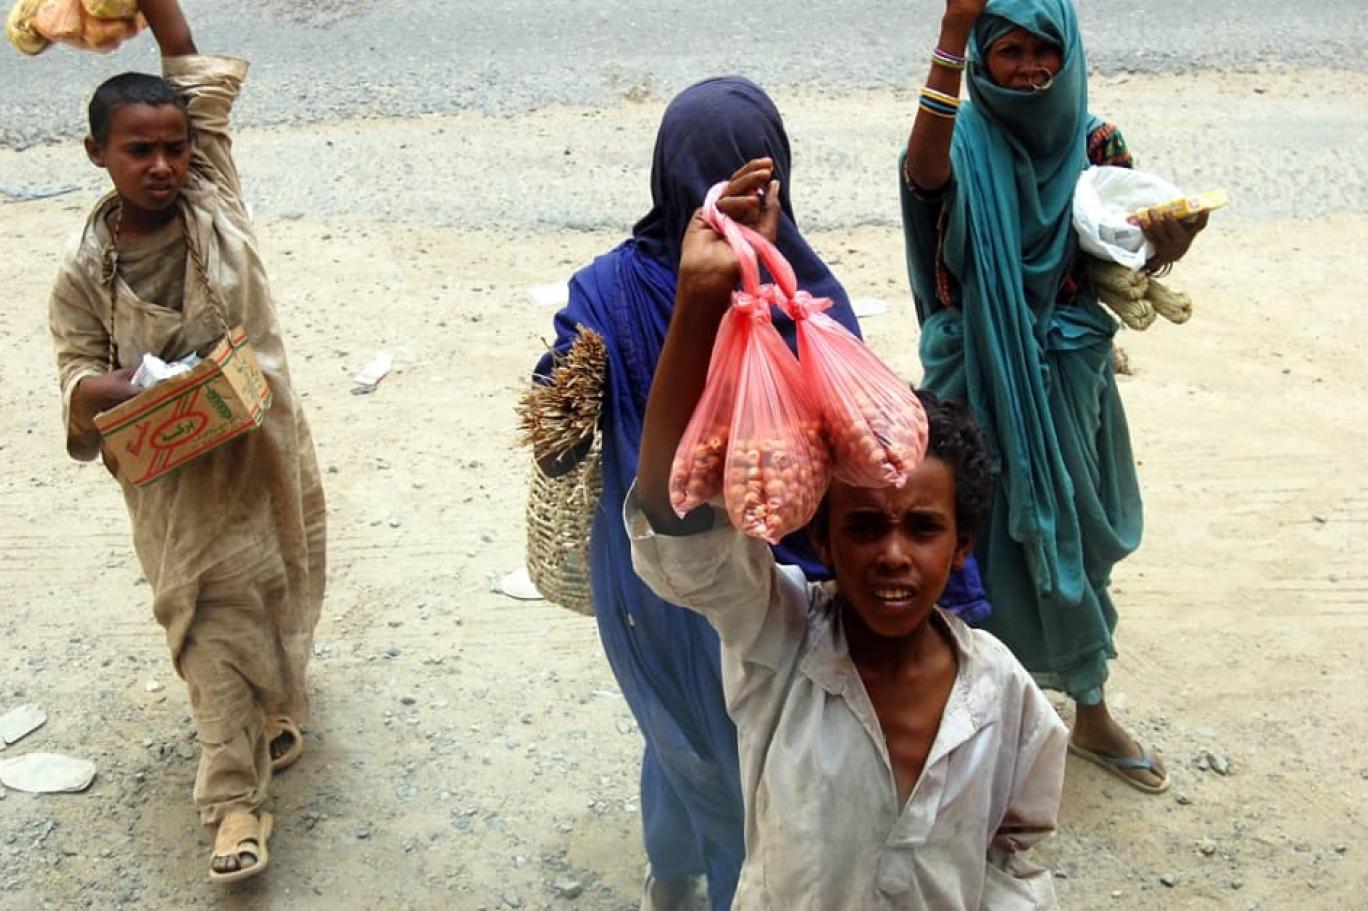 محلل سياسي لـ “الوئام”: السودان يواجه شبح المجاعة والعالم يشاهد في صمت